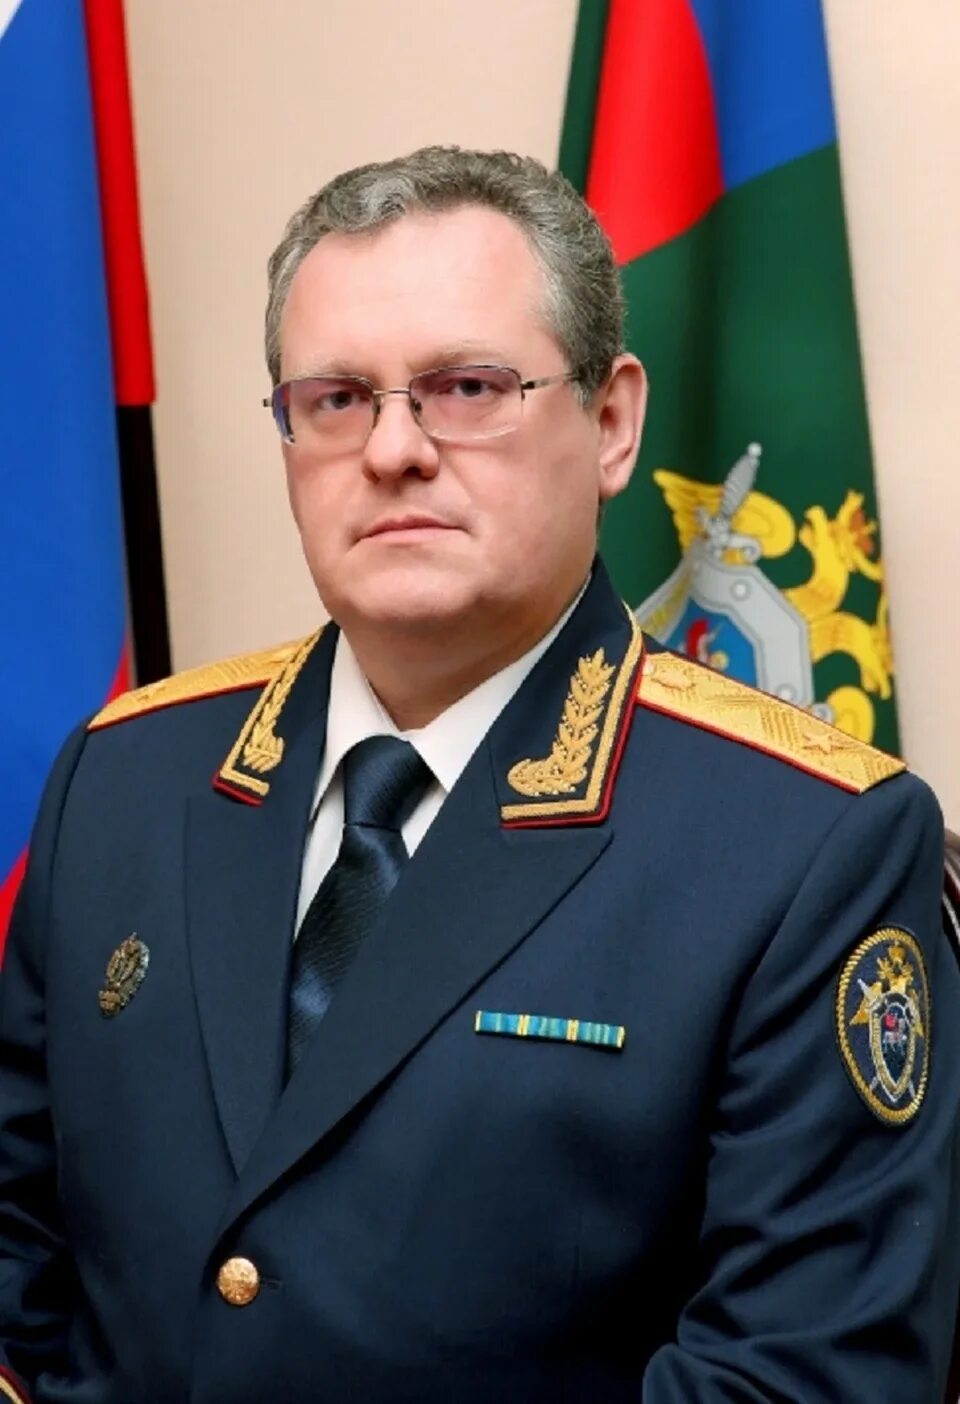 Руководитель военного следственного комитета. Генерал лейтенант юстиции Евтушевский.